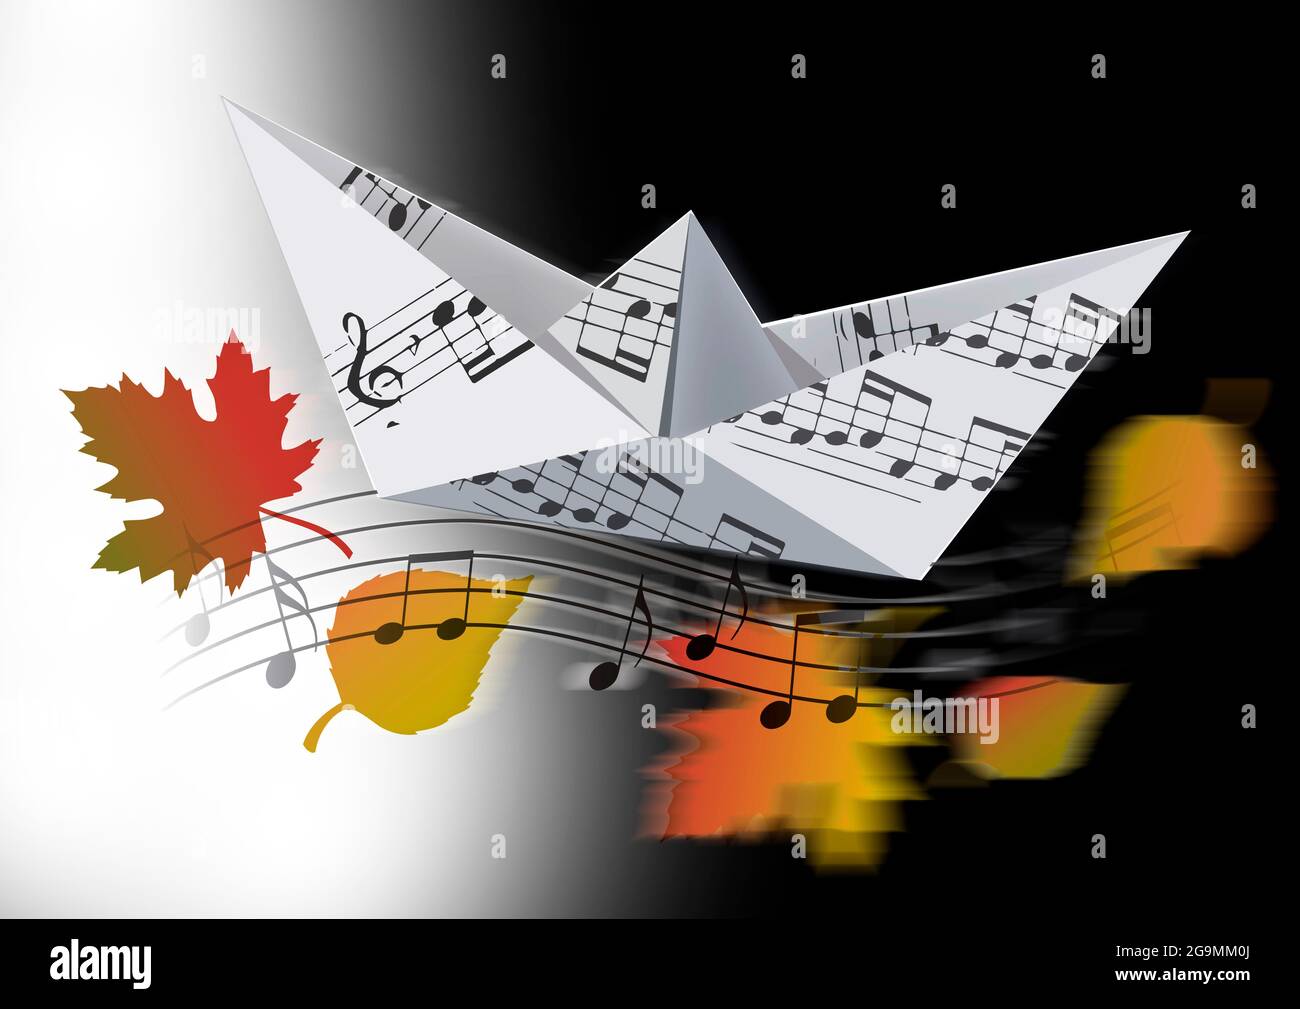 Imbarcazione Origami con note musicali e foglie autunnali. Illustrazione del modello cartaceo della barca con note musicali che simboleggiano la canzone autunnale. Foto Stock